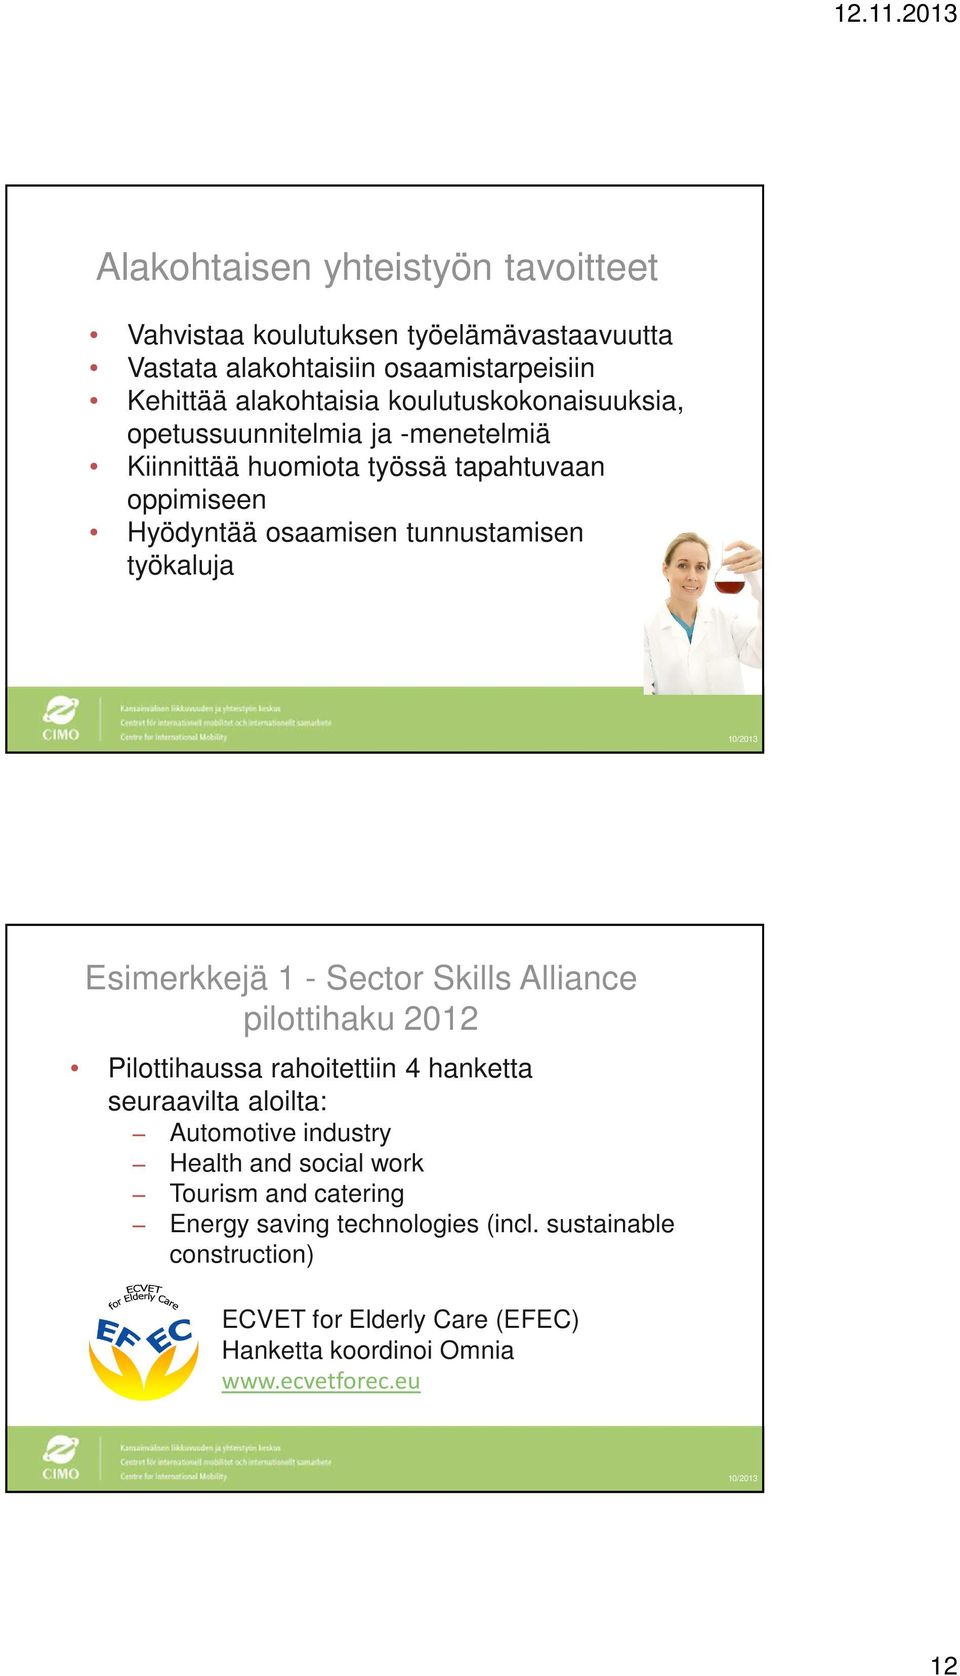 Esimerkkejä 1 - Sector Skills Alliance pilottihaku 2012 Pilottihaussa rahoitettiin 4 hanketta seuraavilta aloilta: Automotive industry Health and